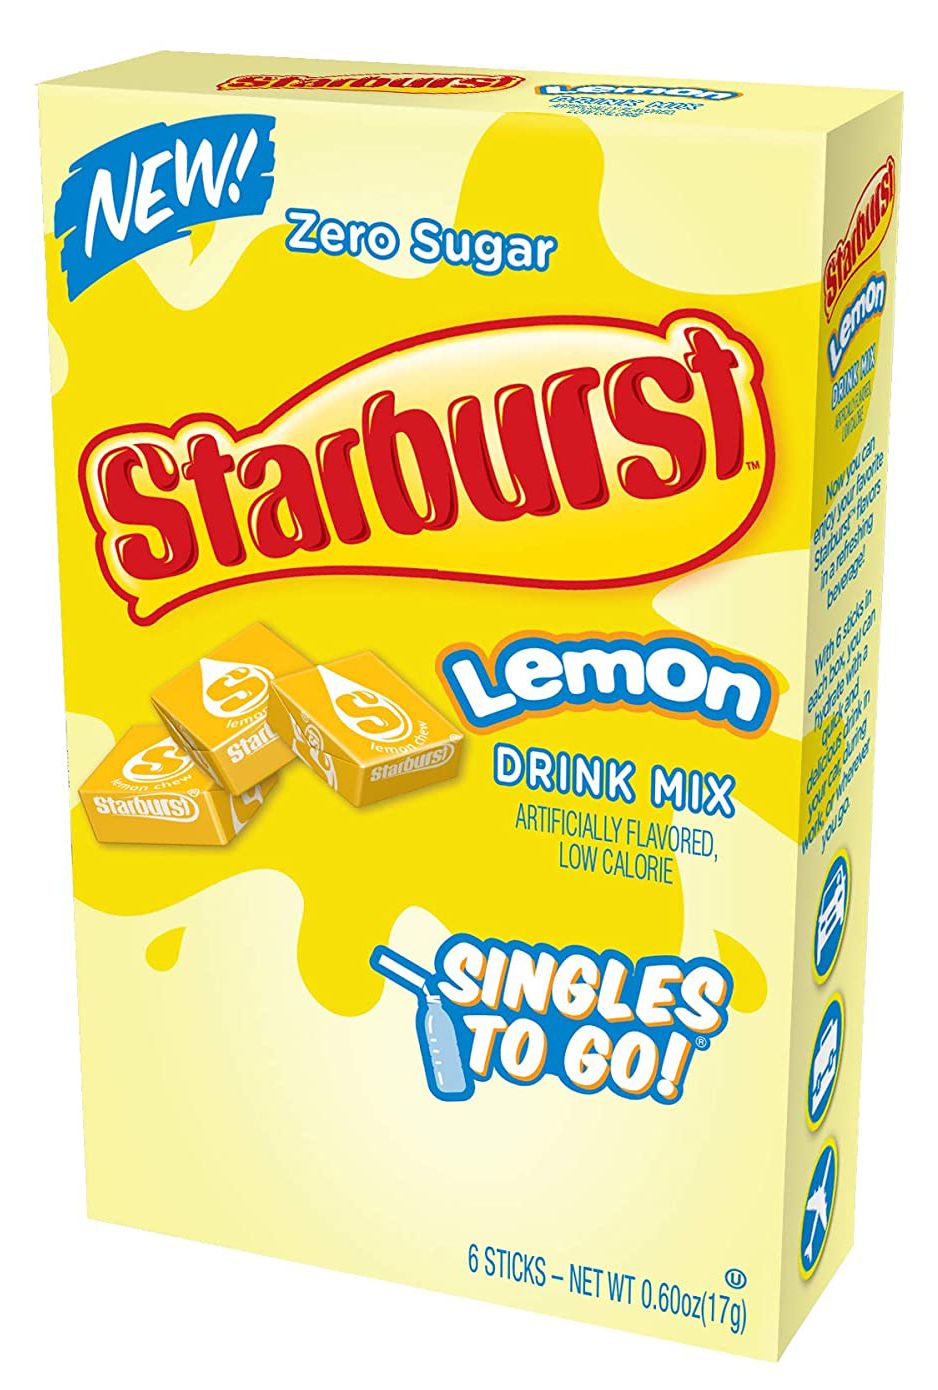 #Flavor_Lemon #Size_6 sticks